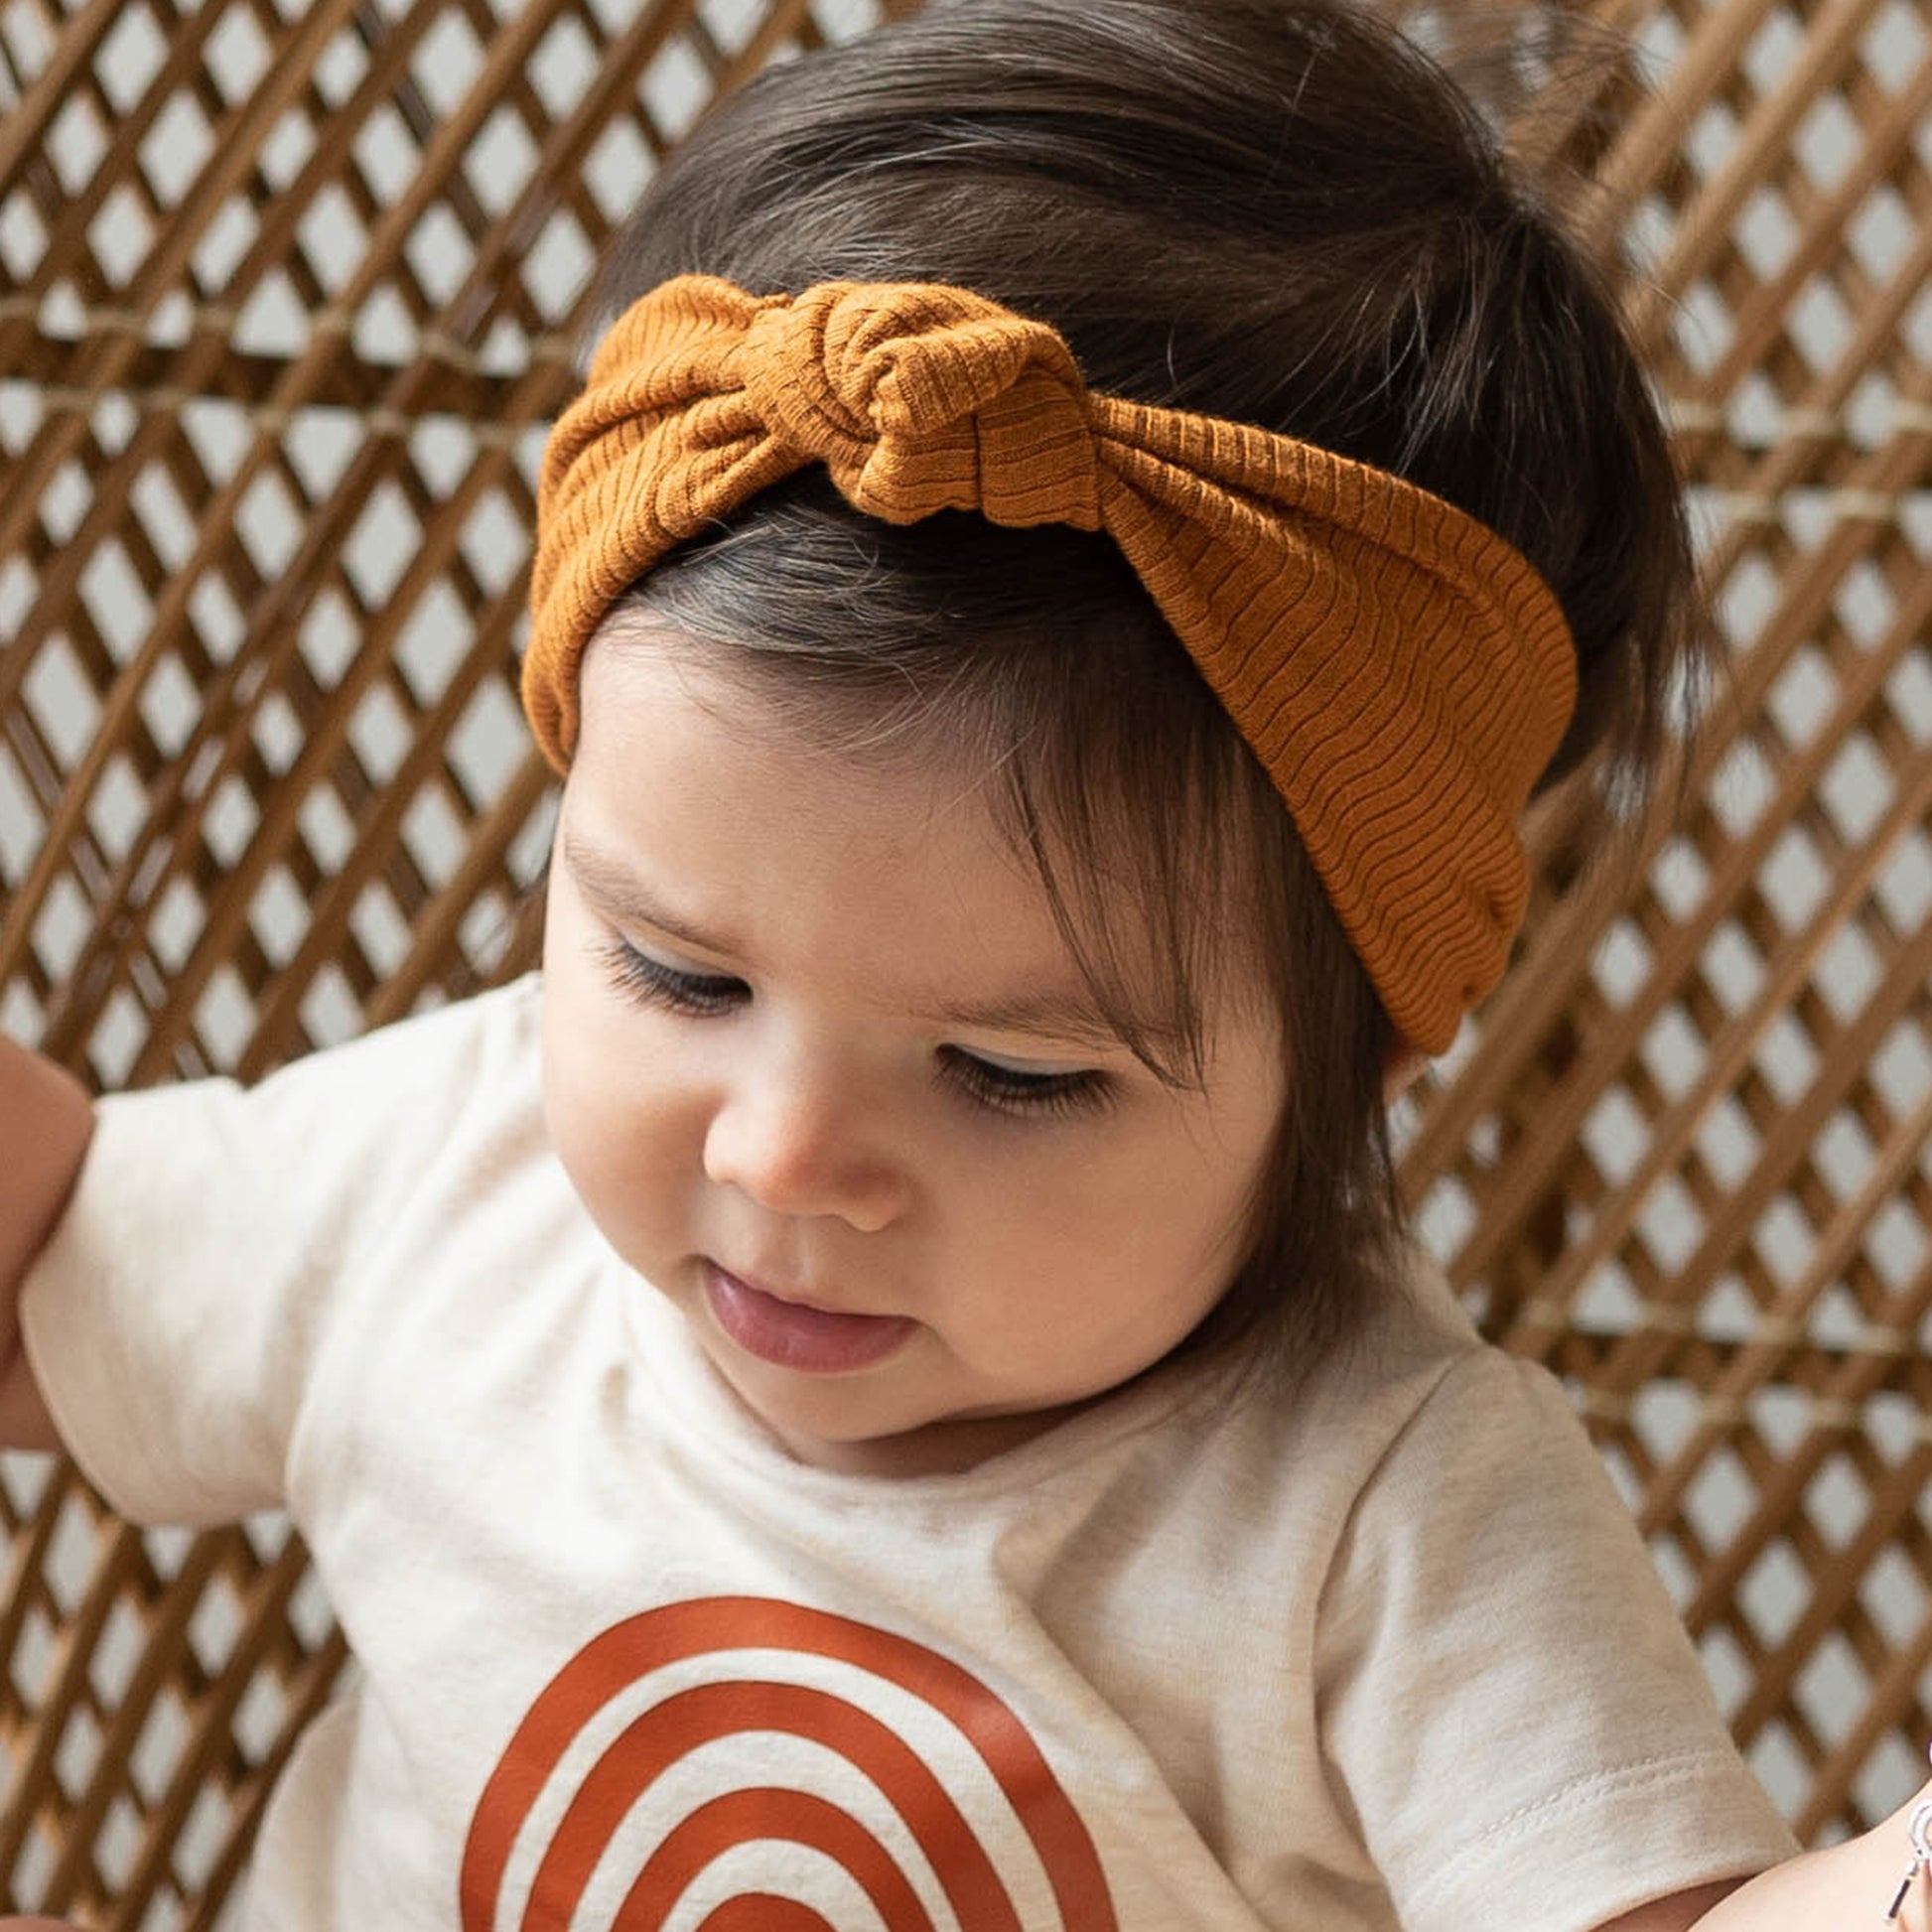 Baby turban headband.